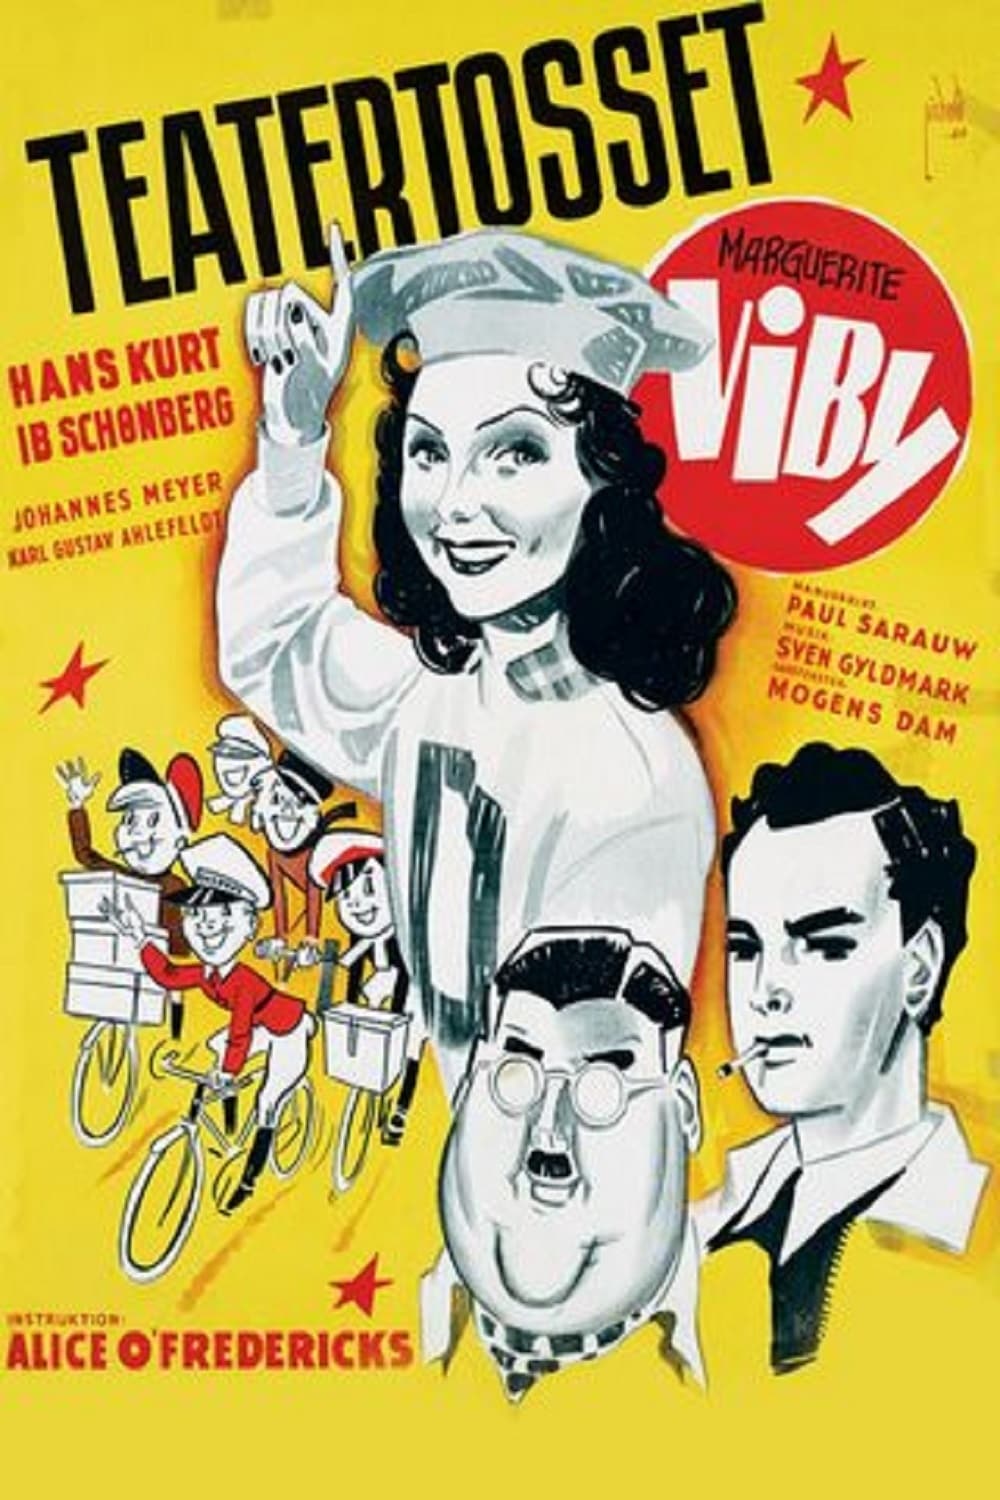 Teatertosset (1944)